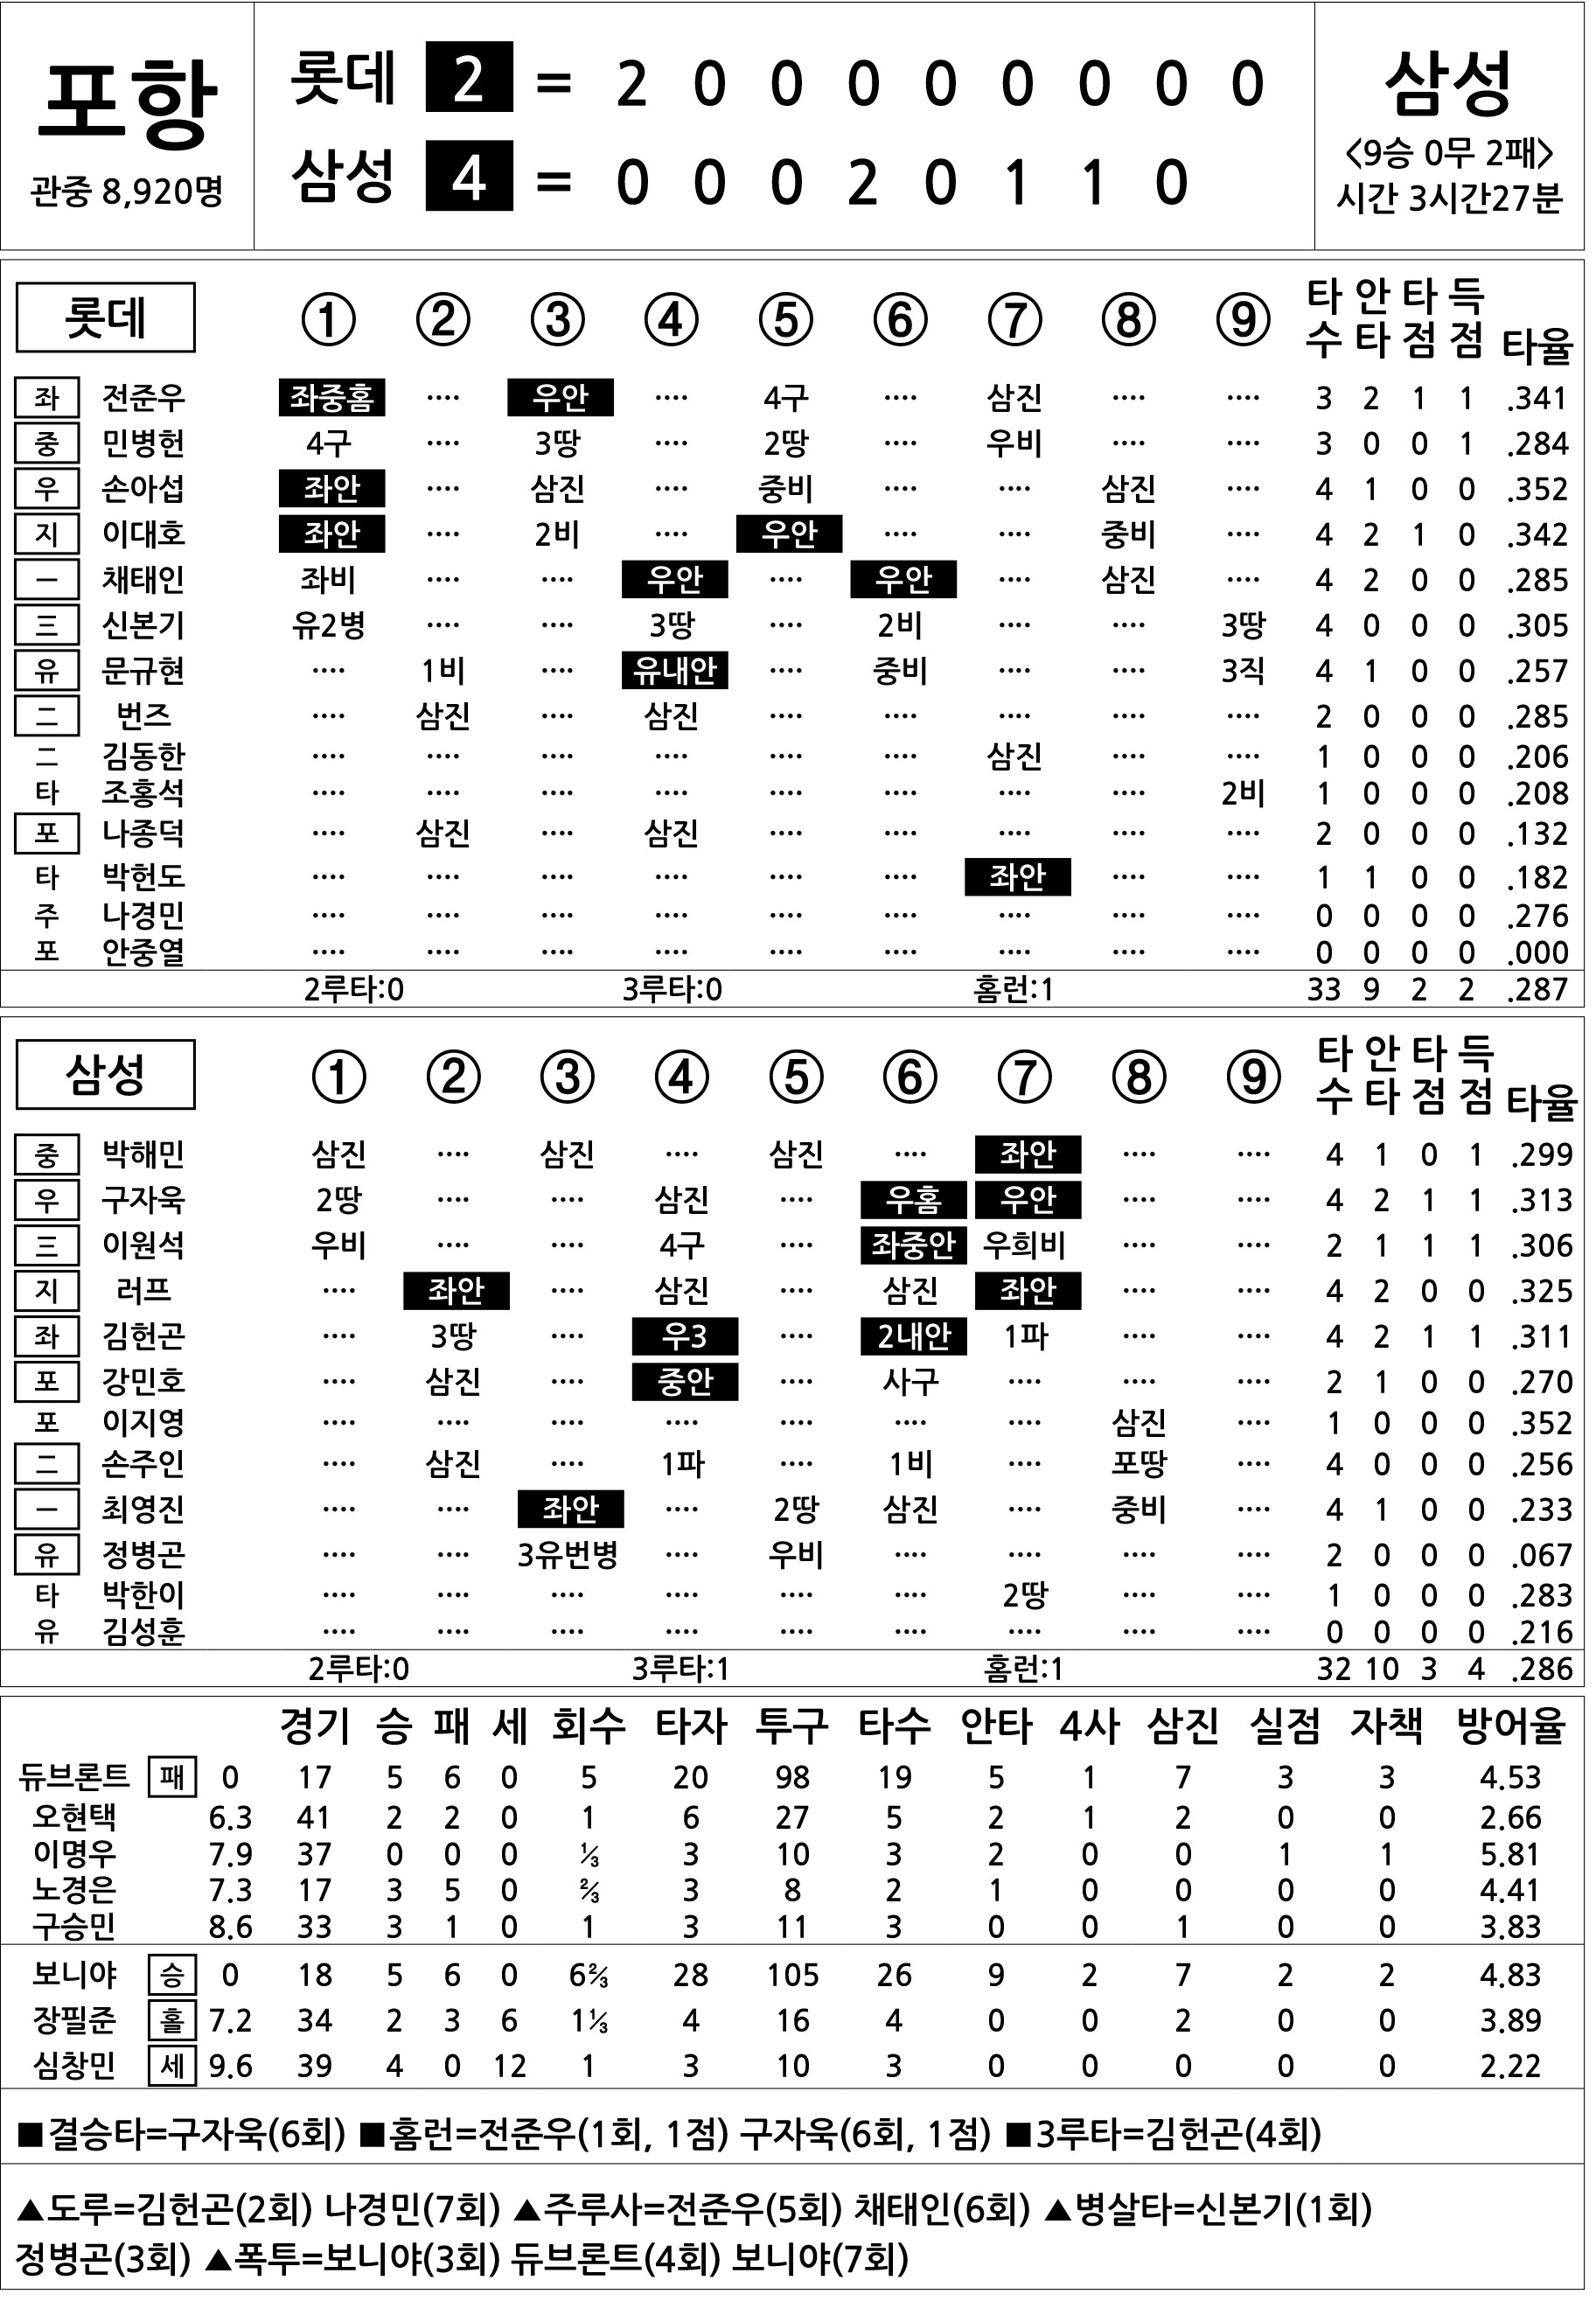  롯데 vs 삼성 (7월 11일)